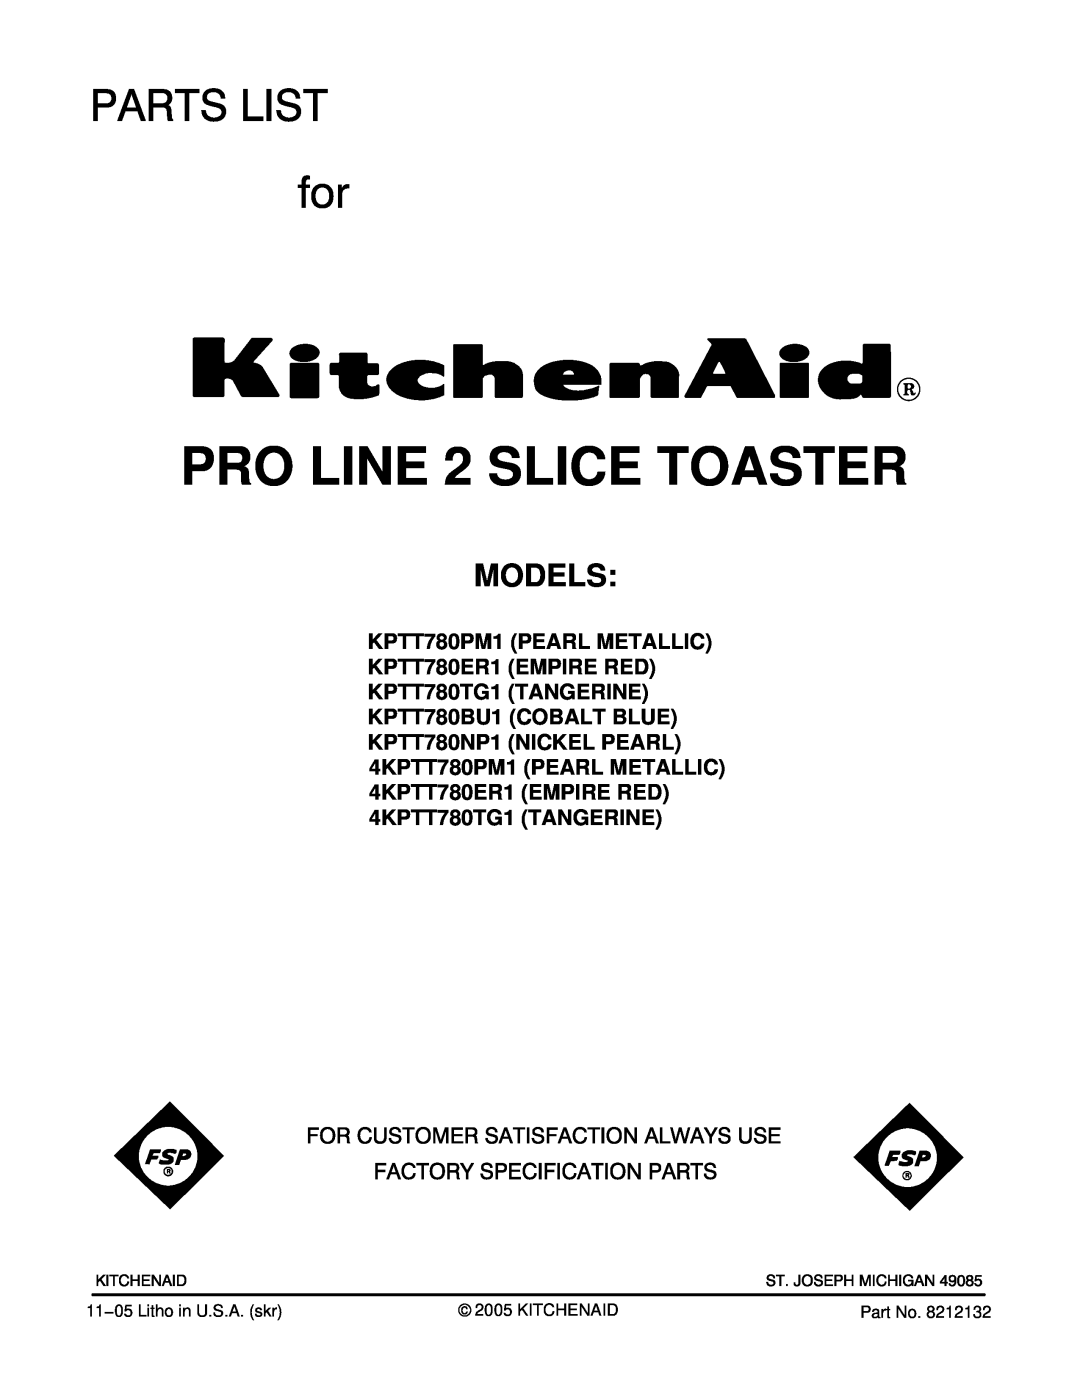 KitchenAid KPTT780PM1, KPTT780NP1, KPTT780BU1, 4KPTT780TG1, 4KPTT780ER1 manual Models, PRO LINE 2 SLICE TOASTER 